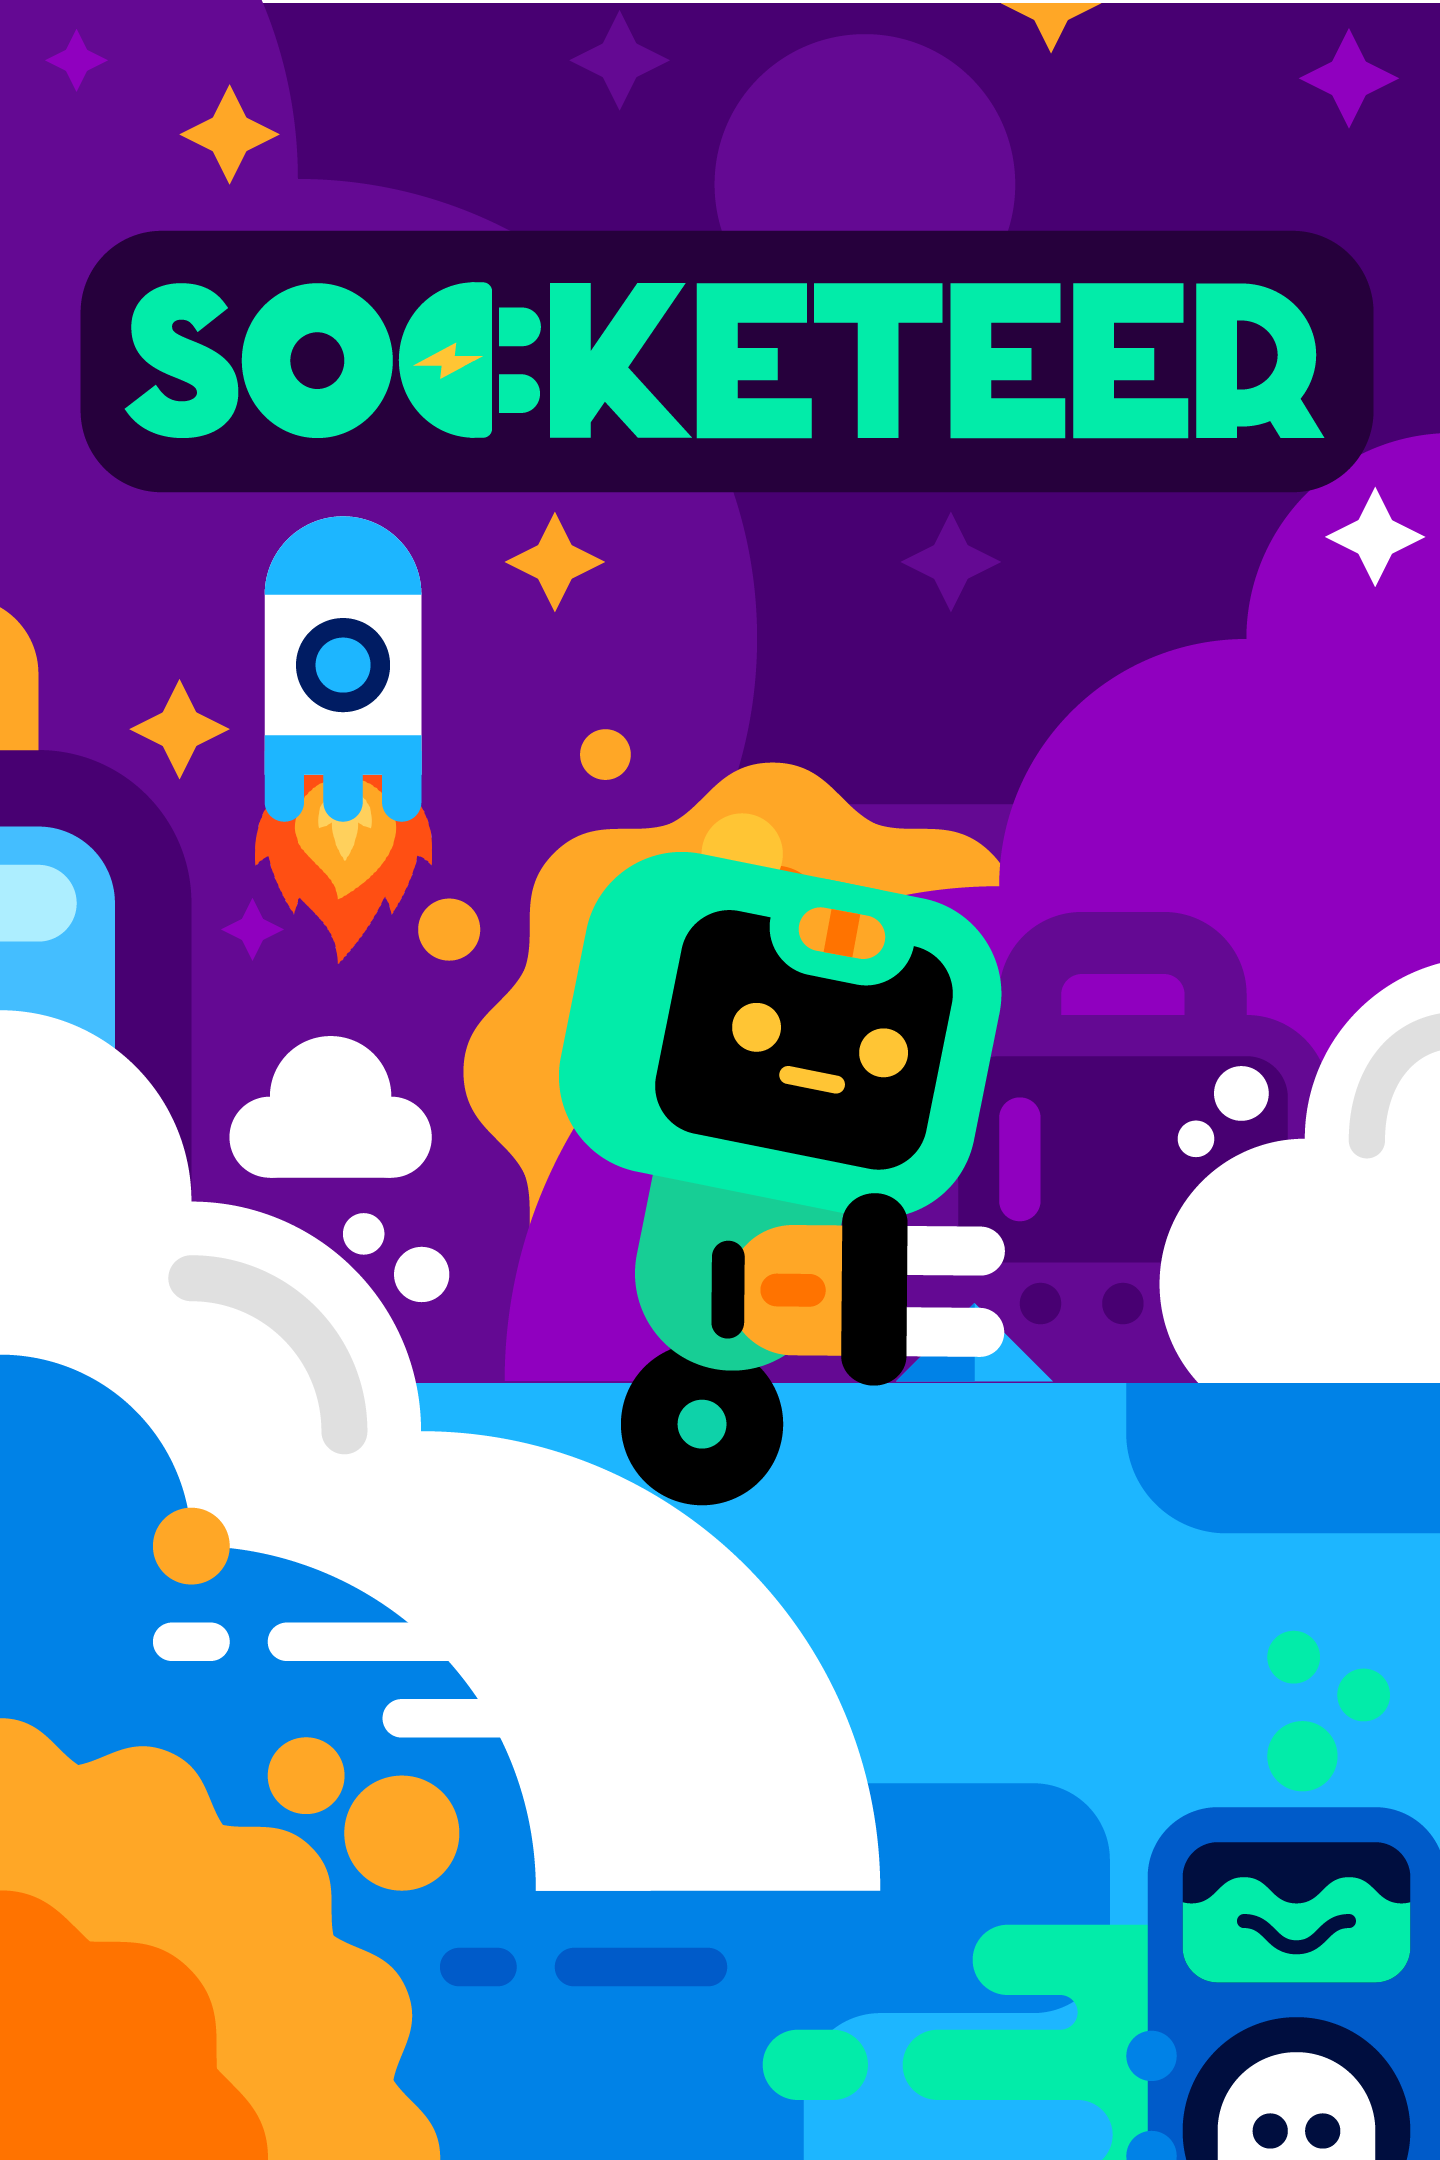 Image of Socketeer